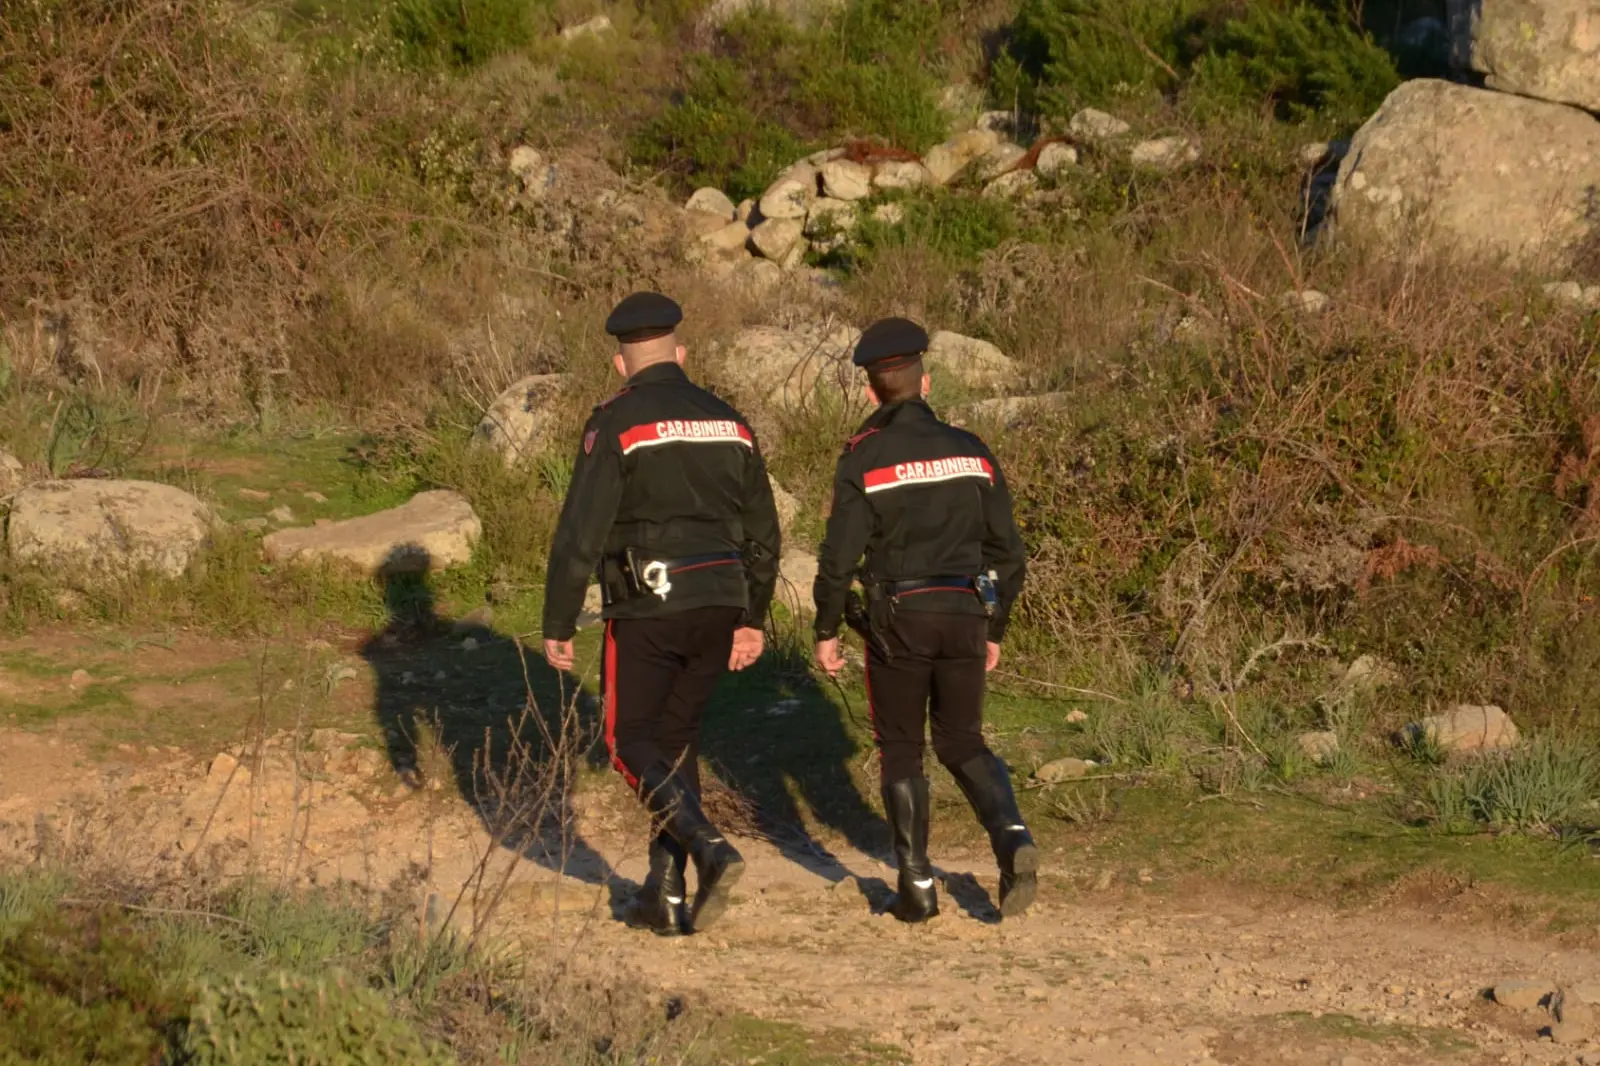 Intervento dei militari (foto carabinieri)